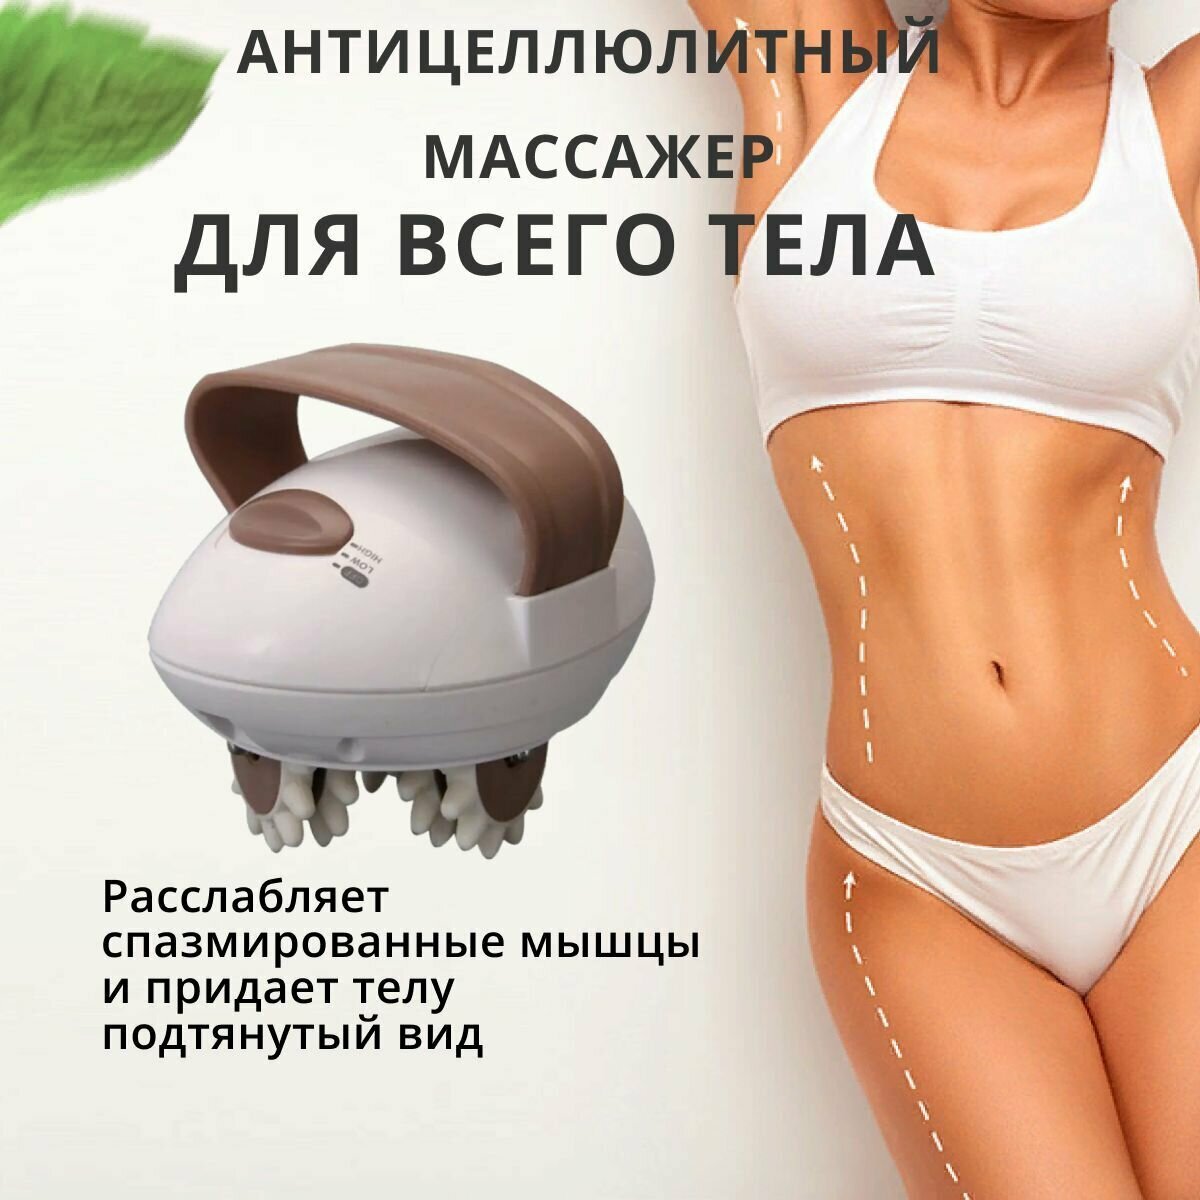 Антицеллюлитный массажер для тела Body Slimmer / массажёр для похудение и расслабления мышц